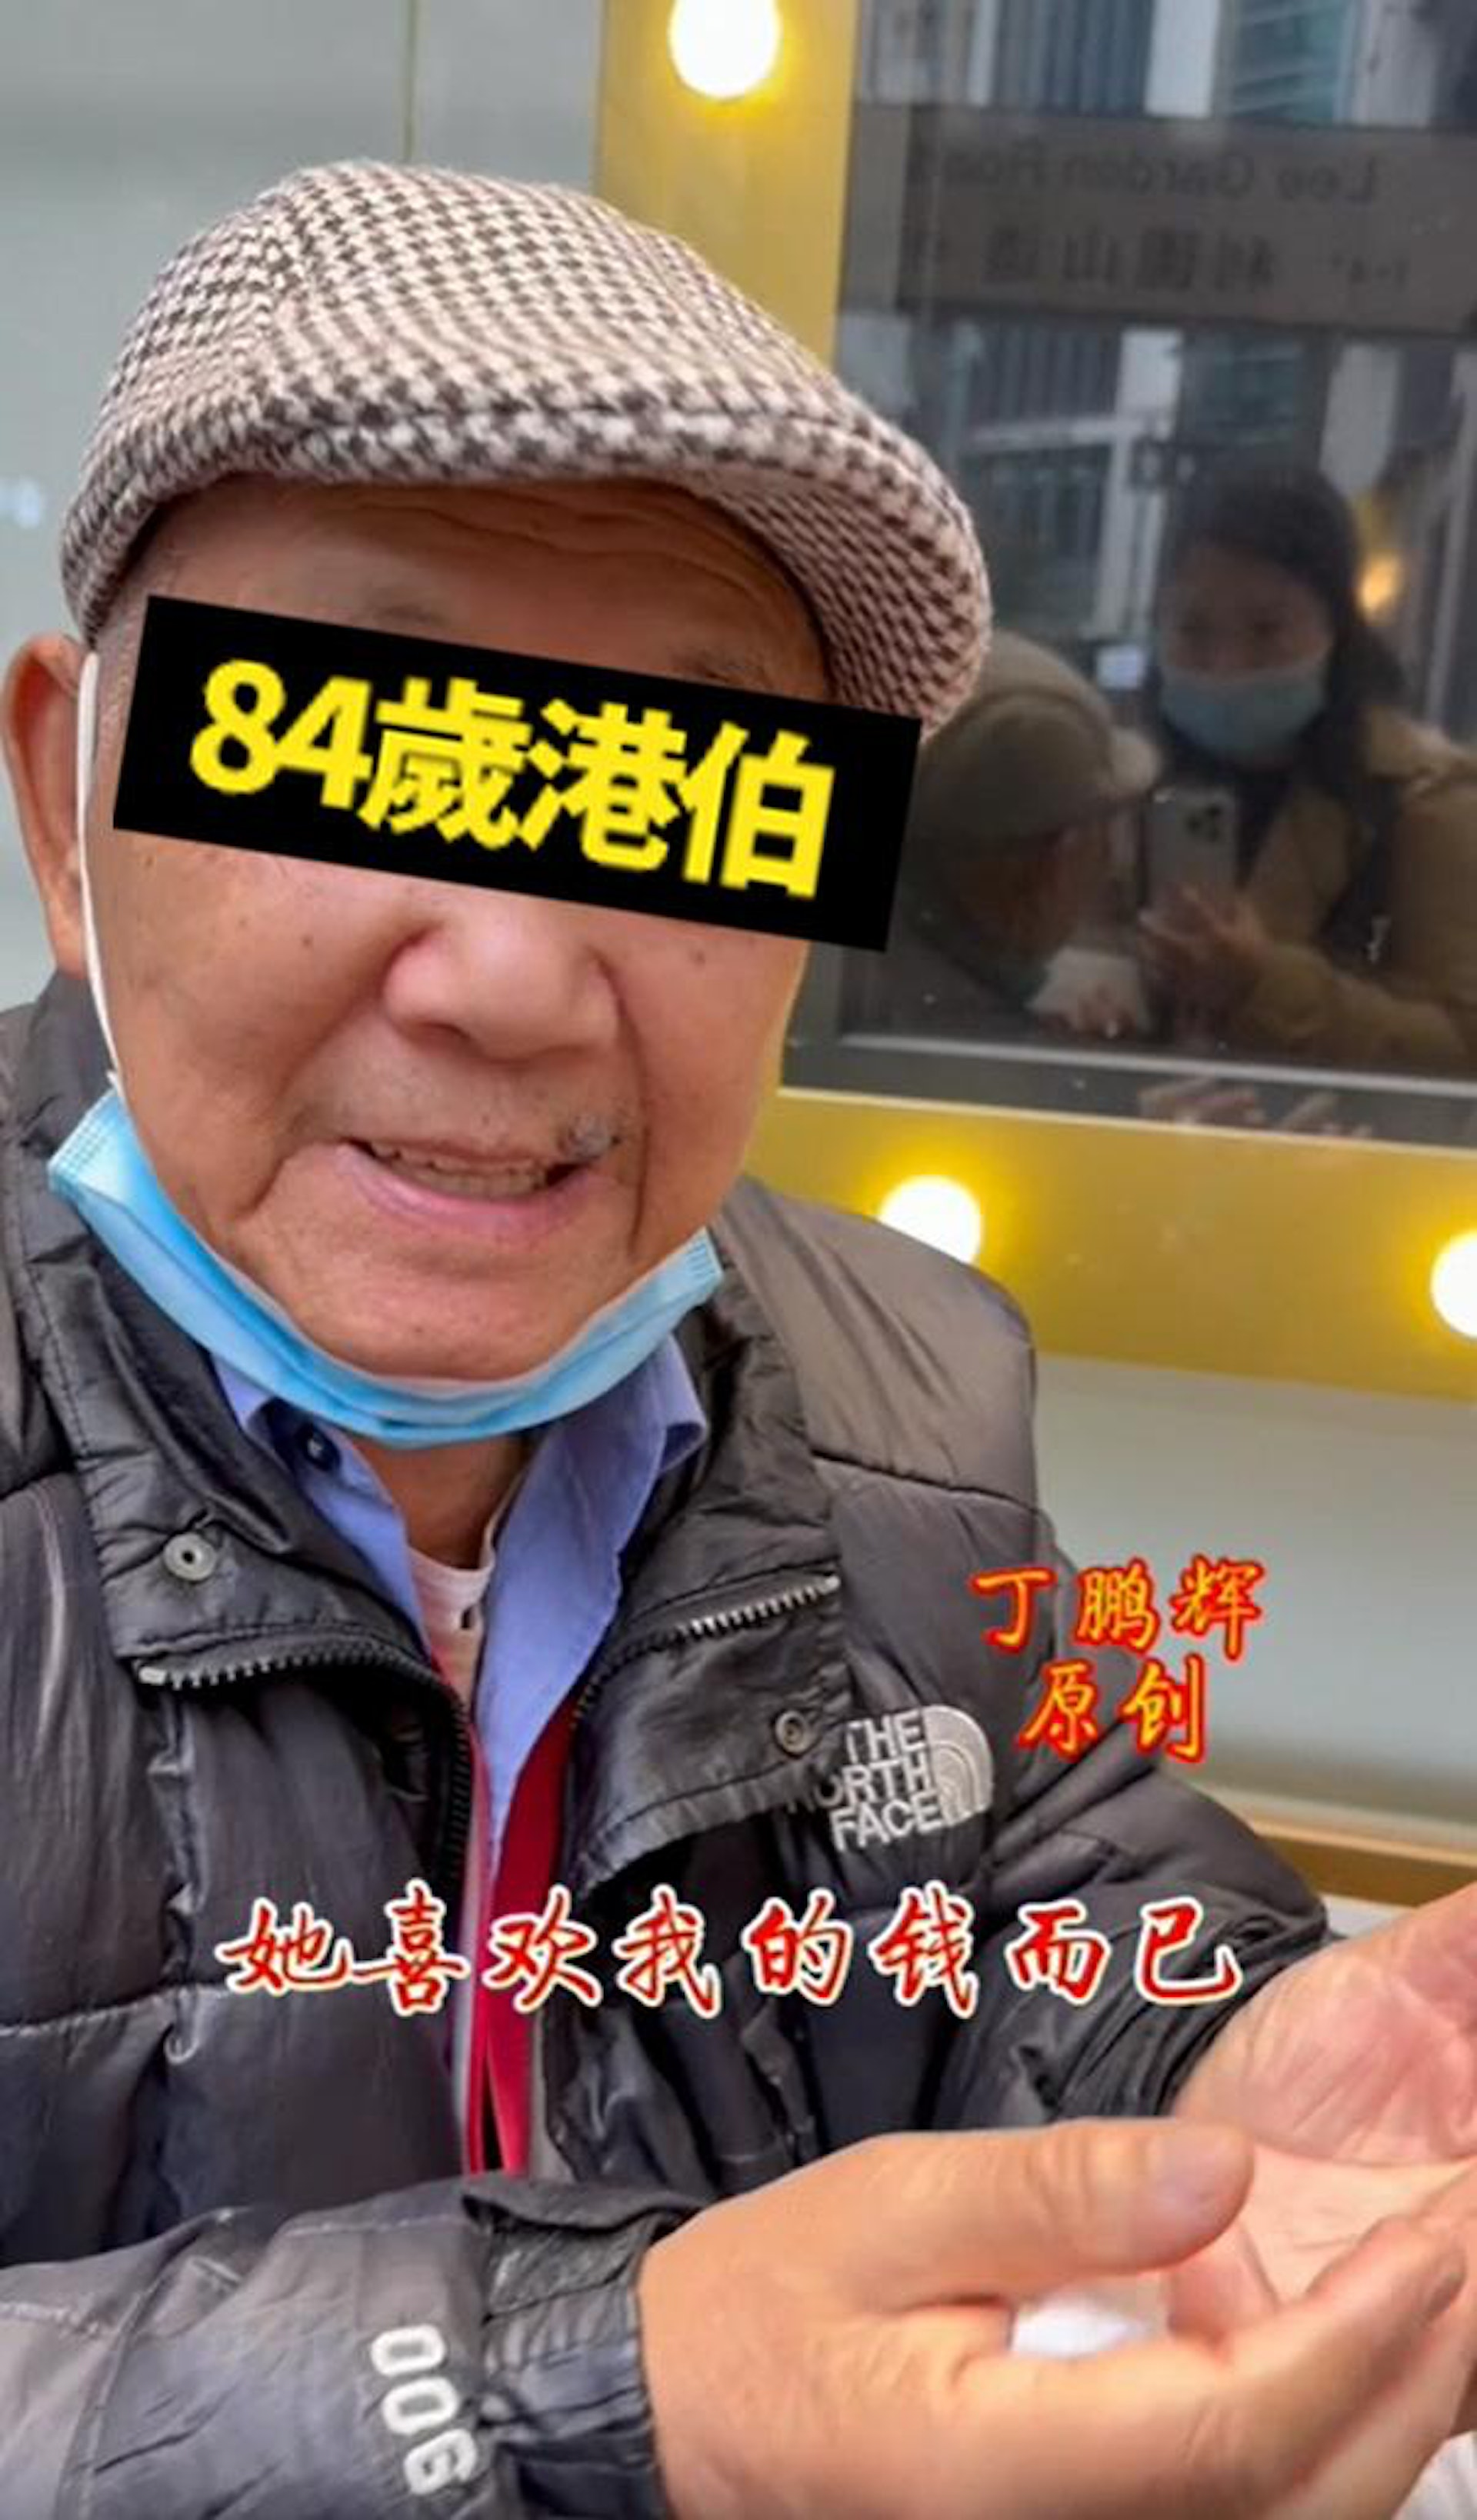 84歲香港老伯指，娶了較他年輕29年的內地妻子後，3年後就開始分房睡，內地妻子更逼他離婚，感嘆「佢可能係嫌我老囉……佢鍾意我啲錢咋！」。（影片截圖）